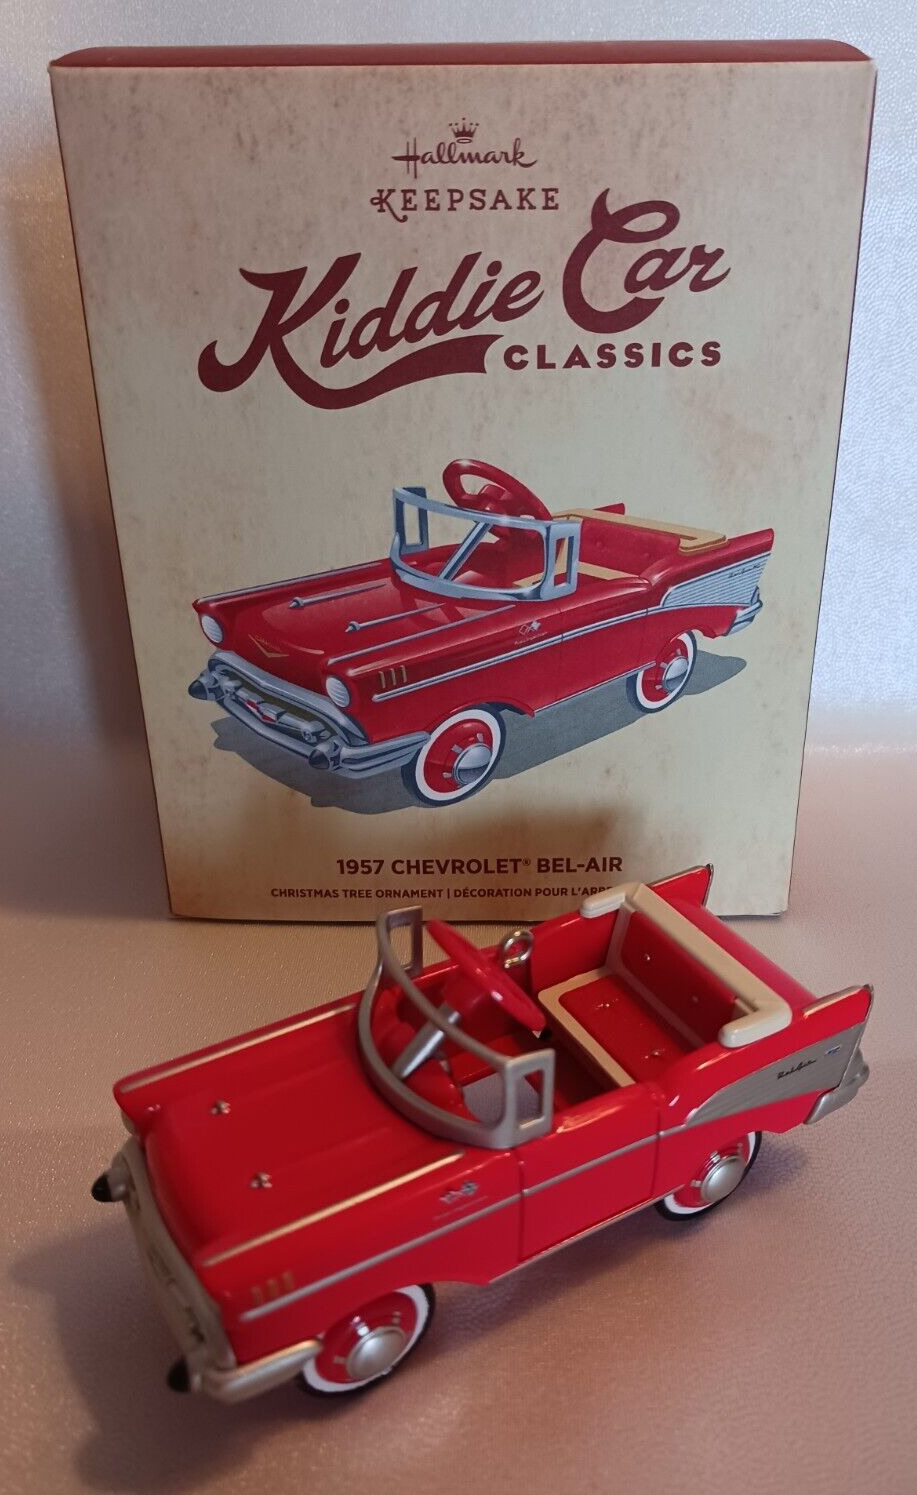 Hallmark Kiddie Car Classics 1957 Chevrolet Bel-Air Ornament; MIB, NIB; QEP2179